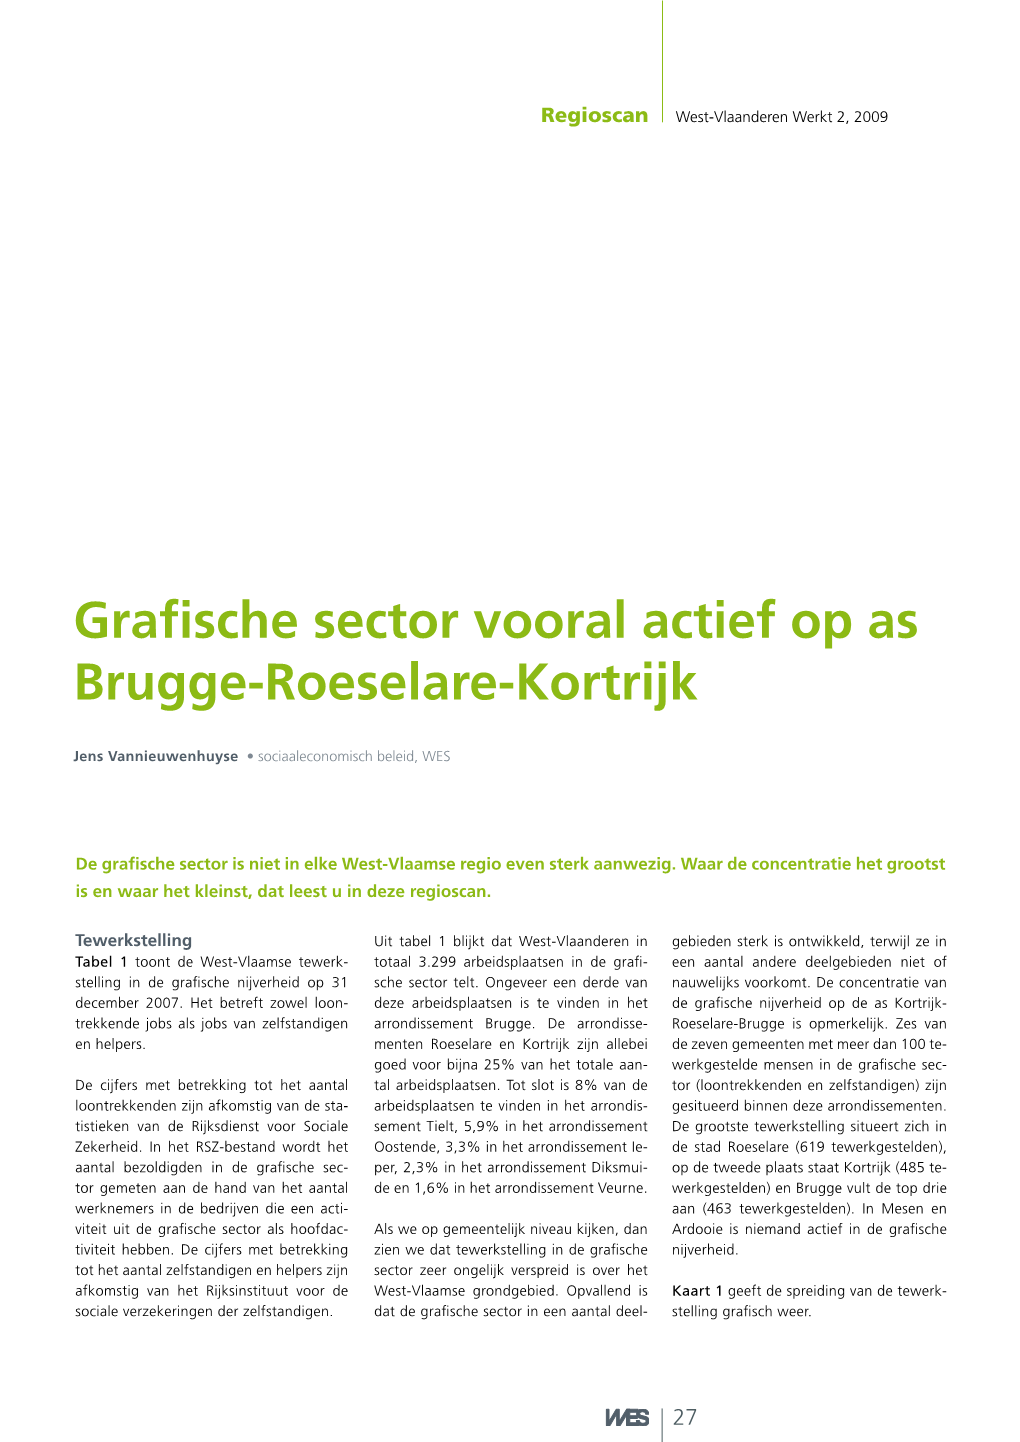 Grafische Sector Vooral Actief Op As Brugge-Roeselare-Kortrijk